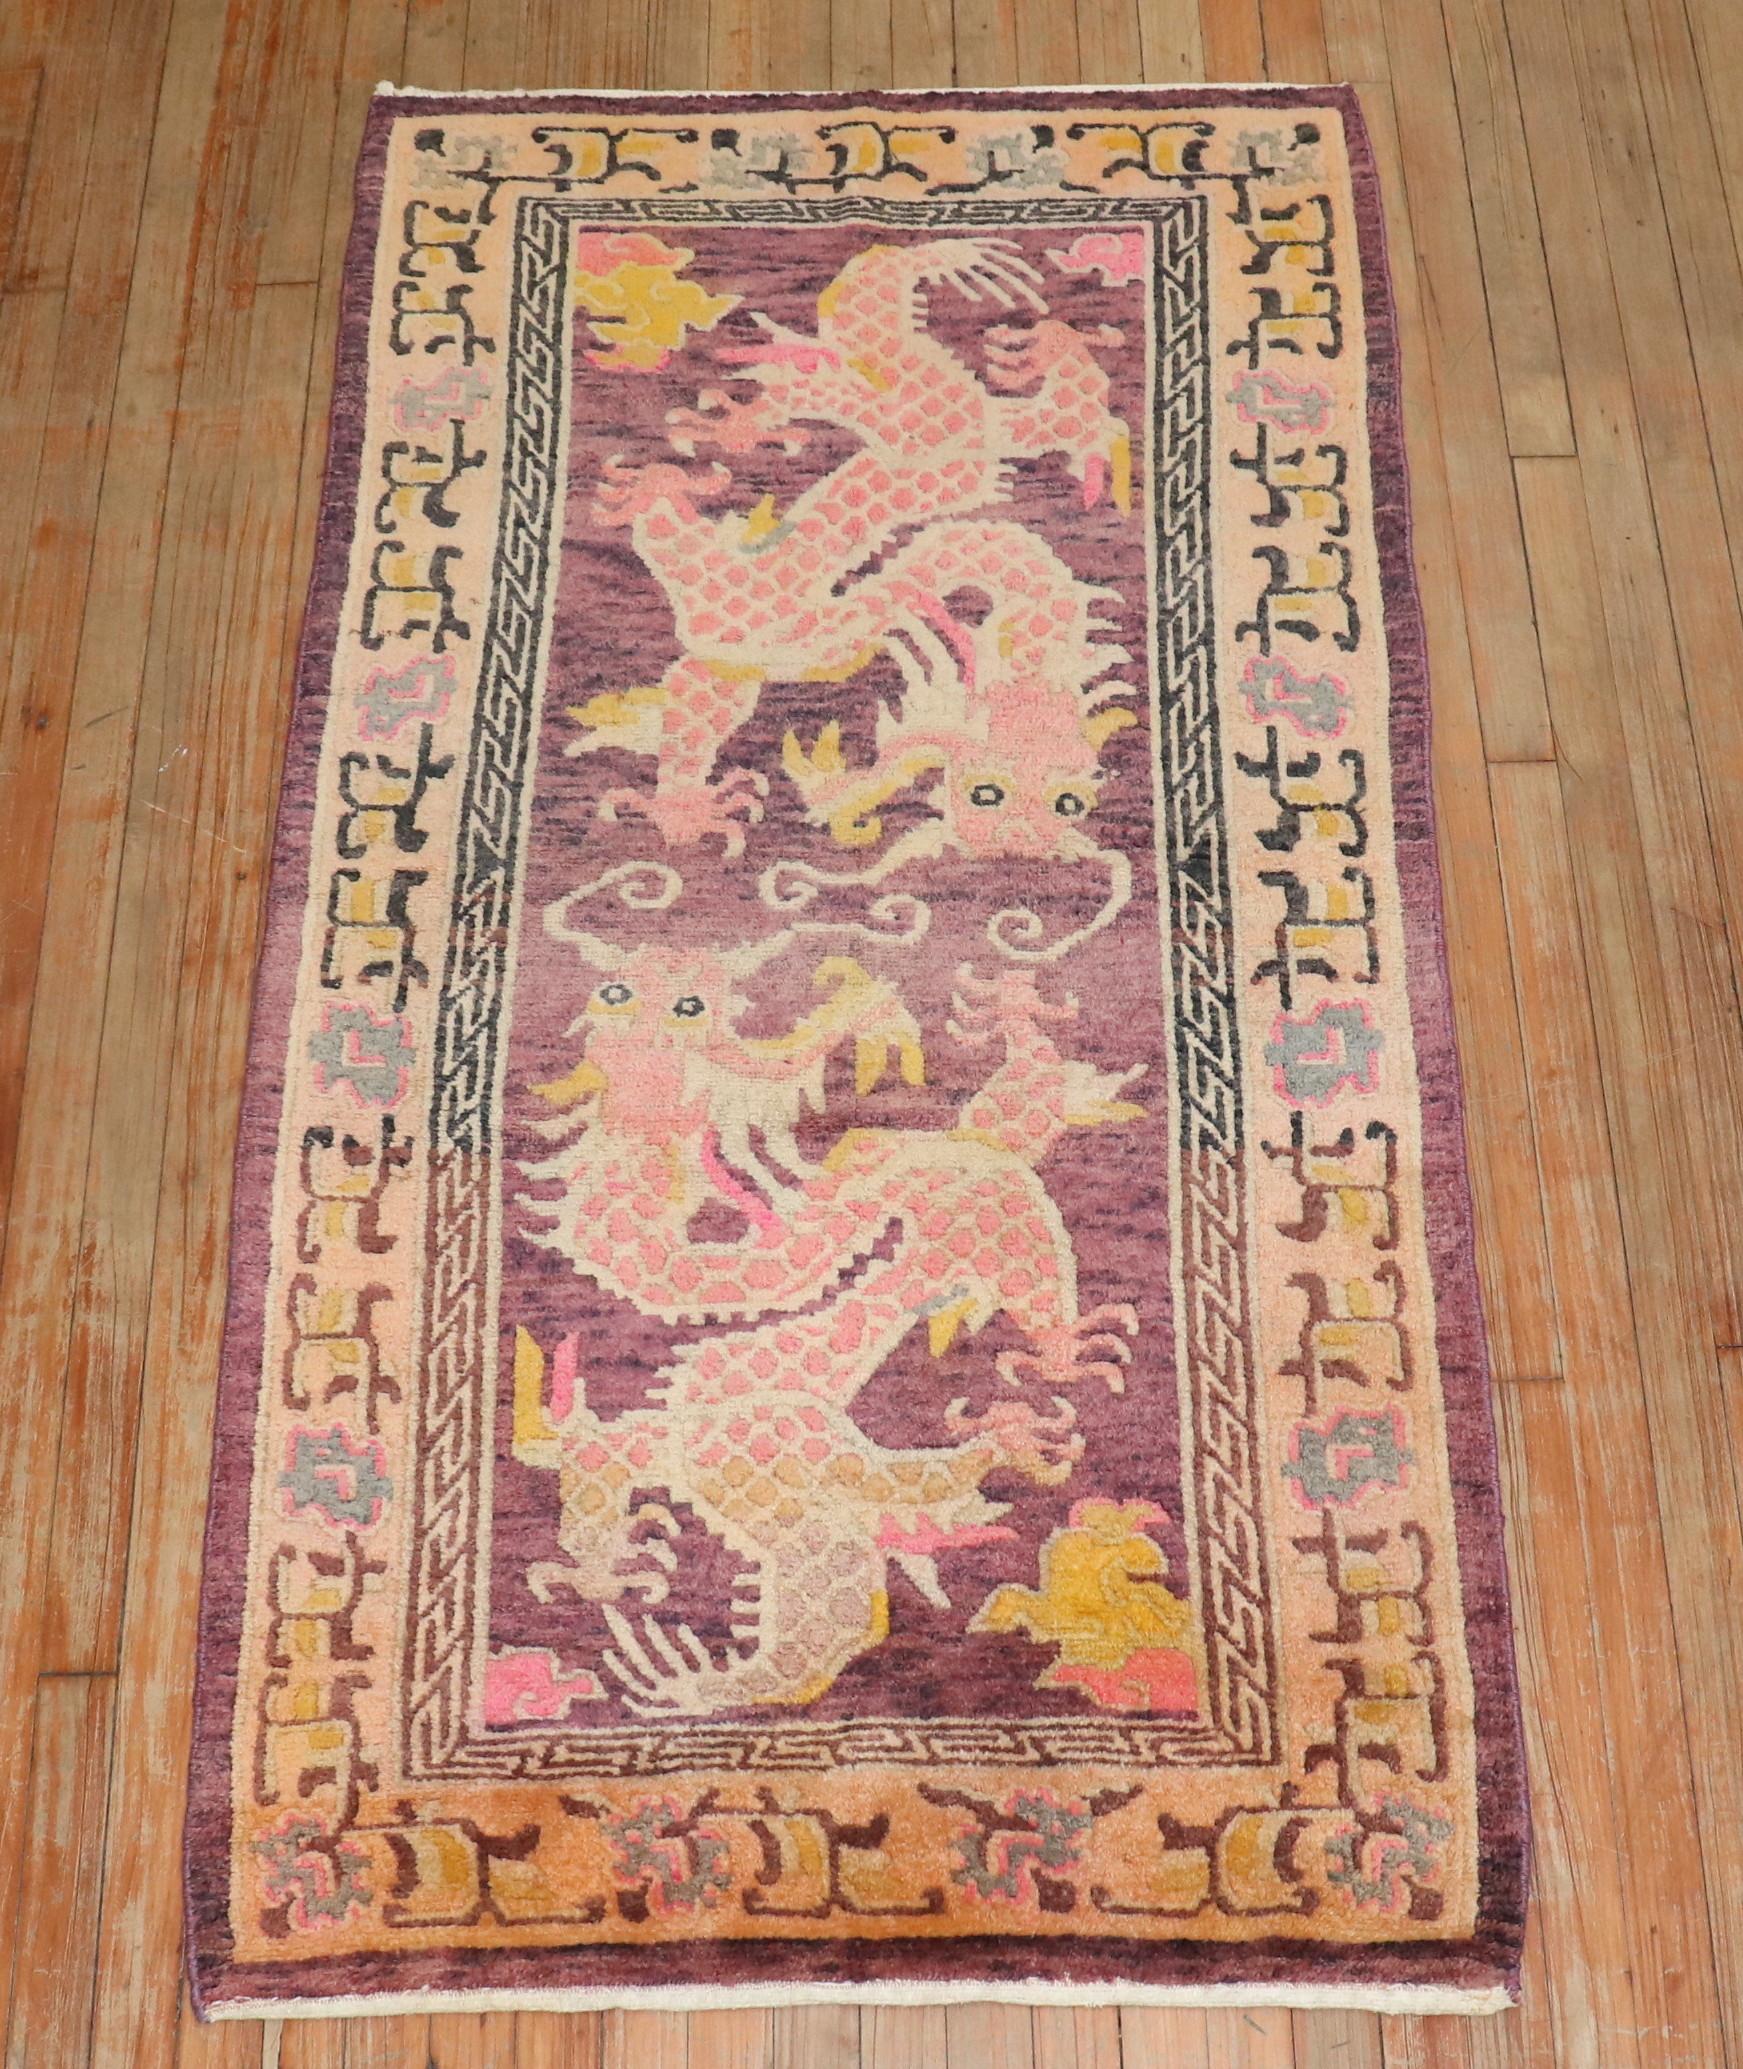 Zabihi Kollektion Lavendel Drache Vintage Tibetischer Teppich (Volkskunst)